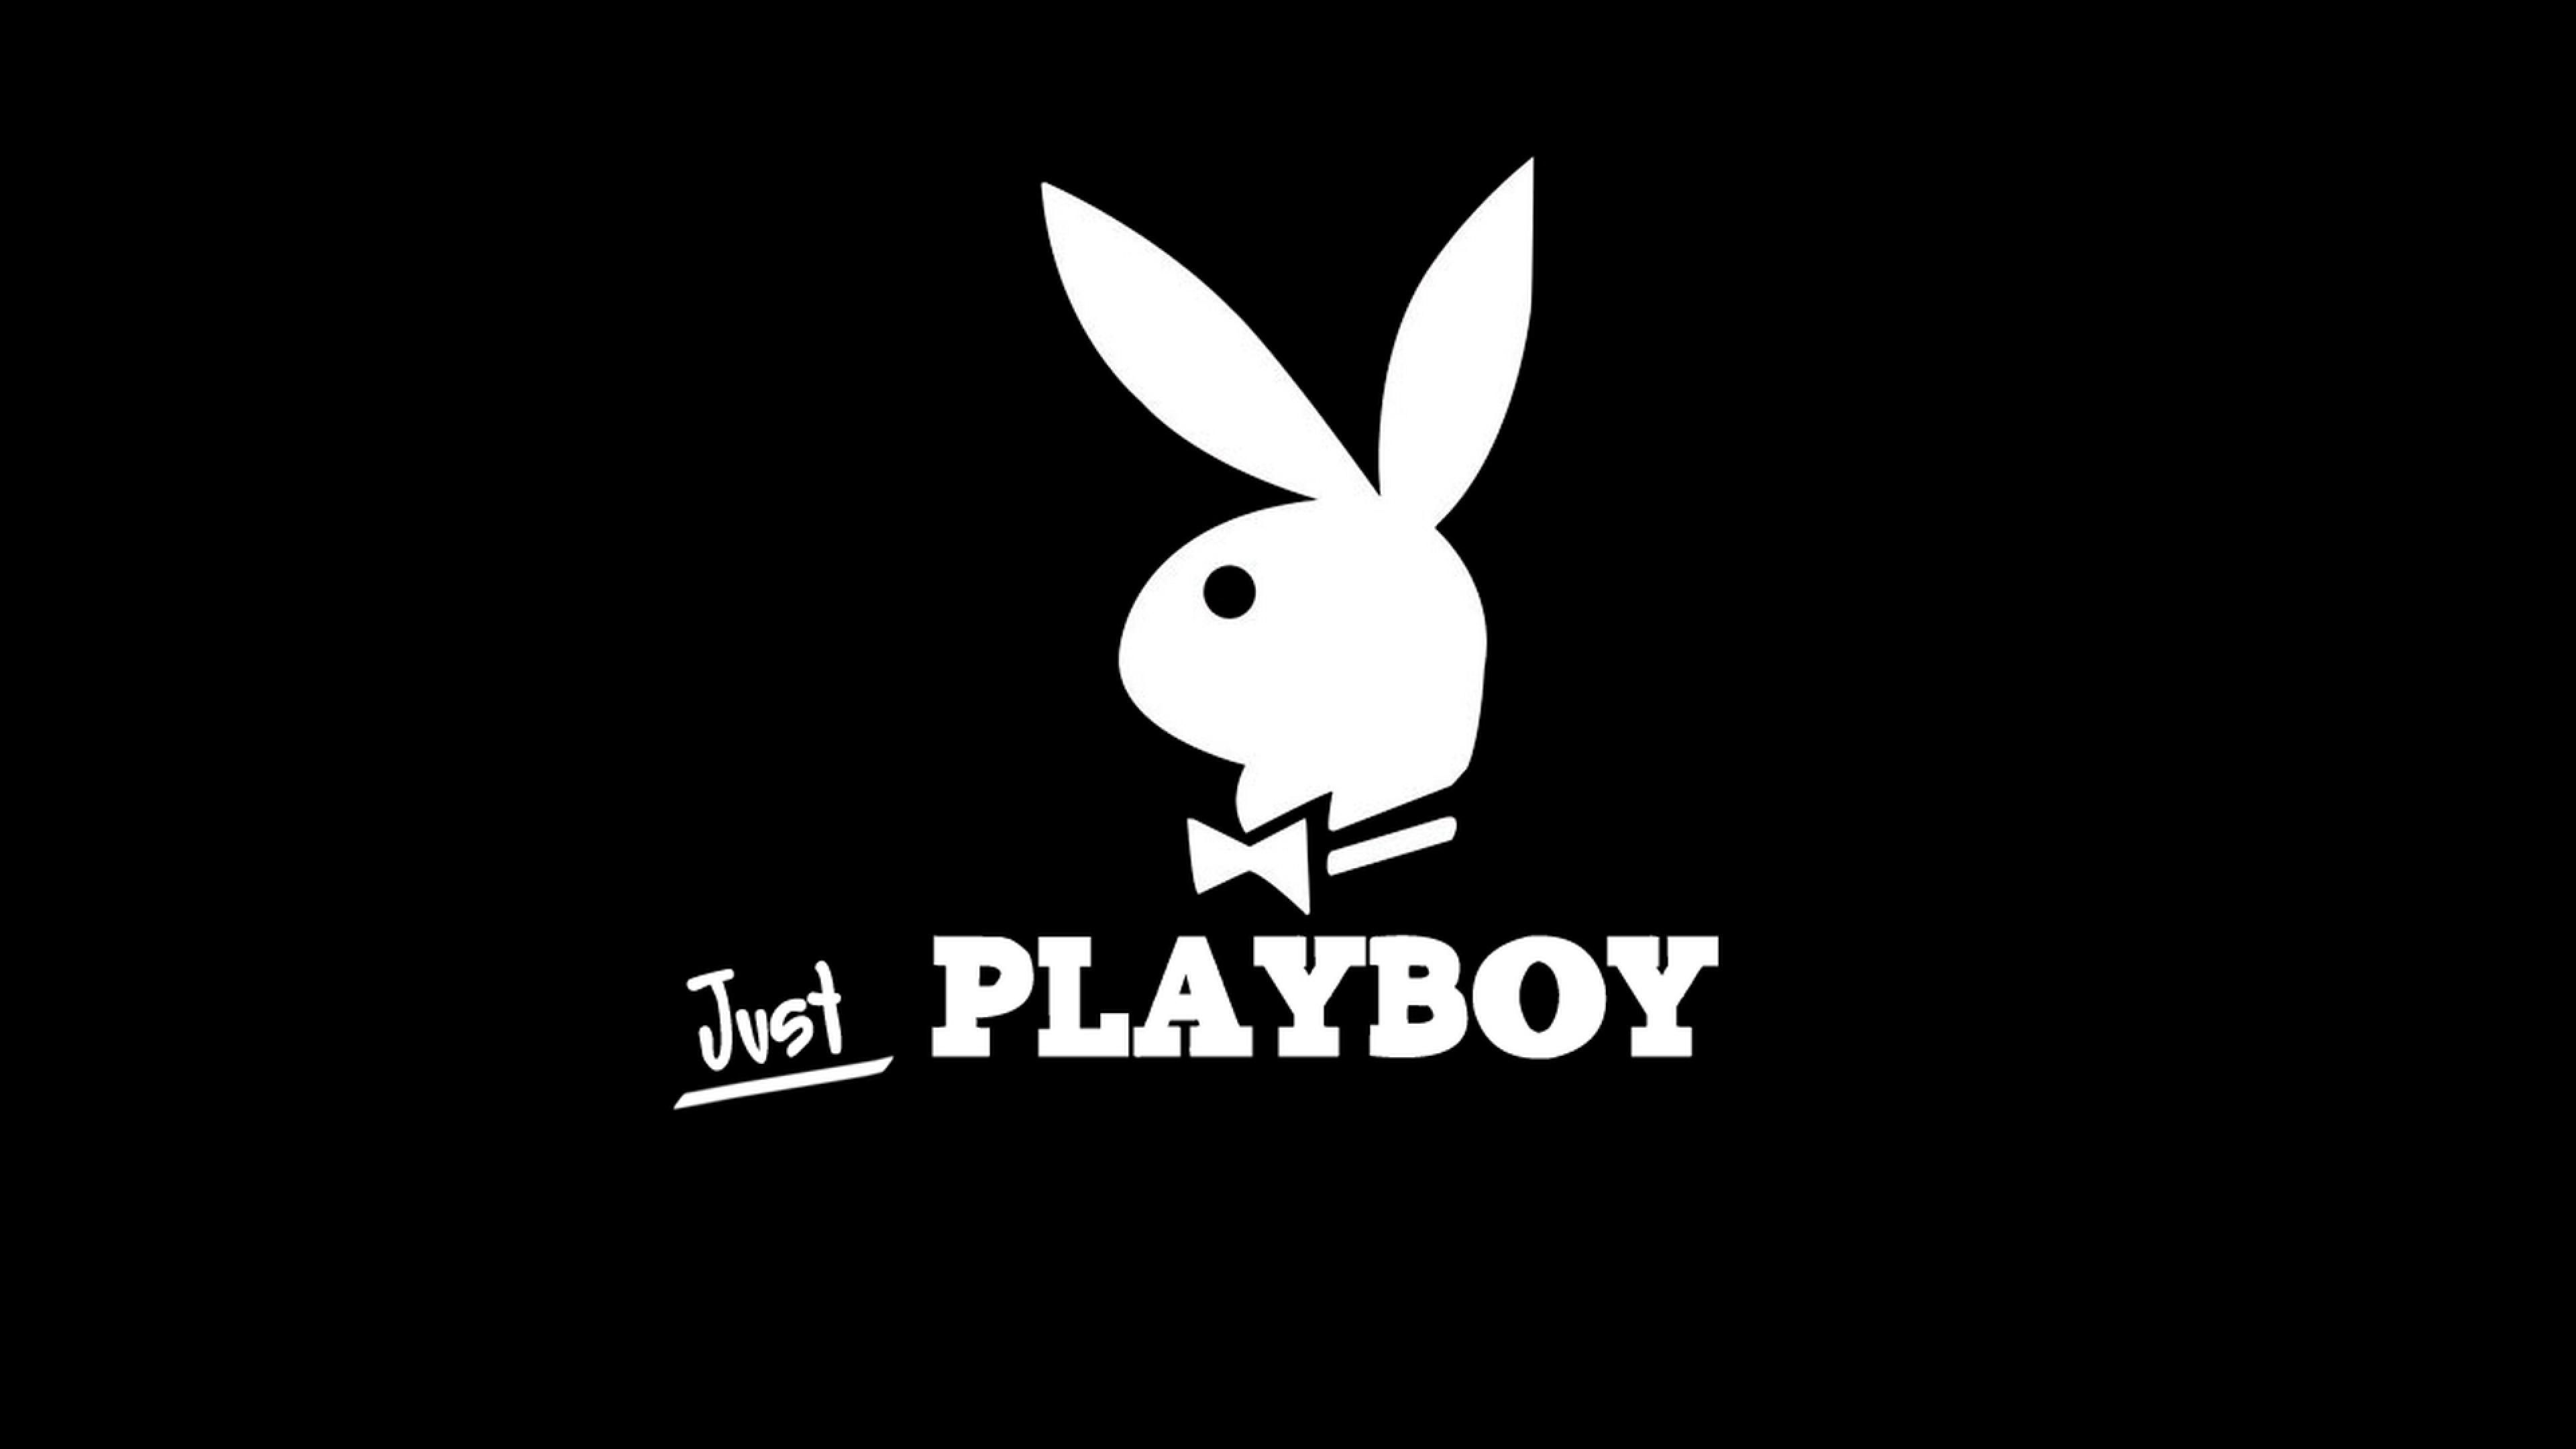 Як виглядатиме нова обкладинка Playboy з оголеними моделями: фото (18+)